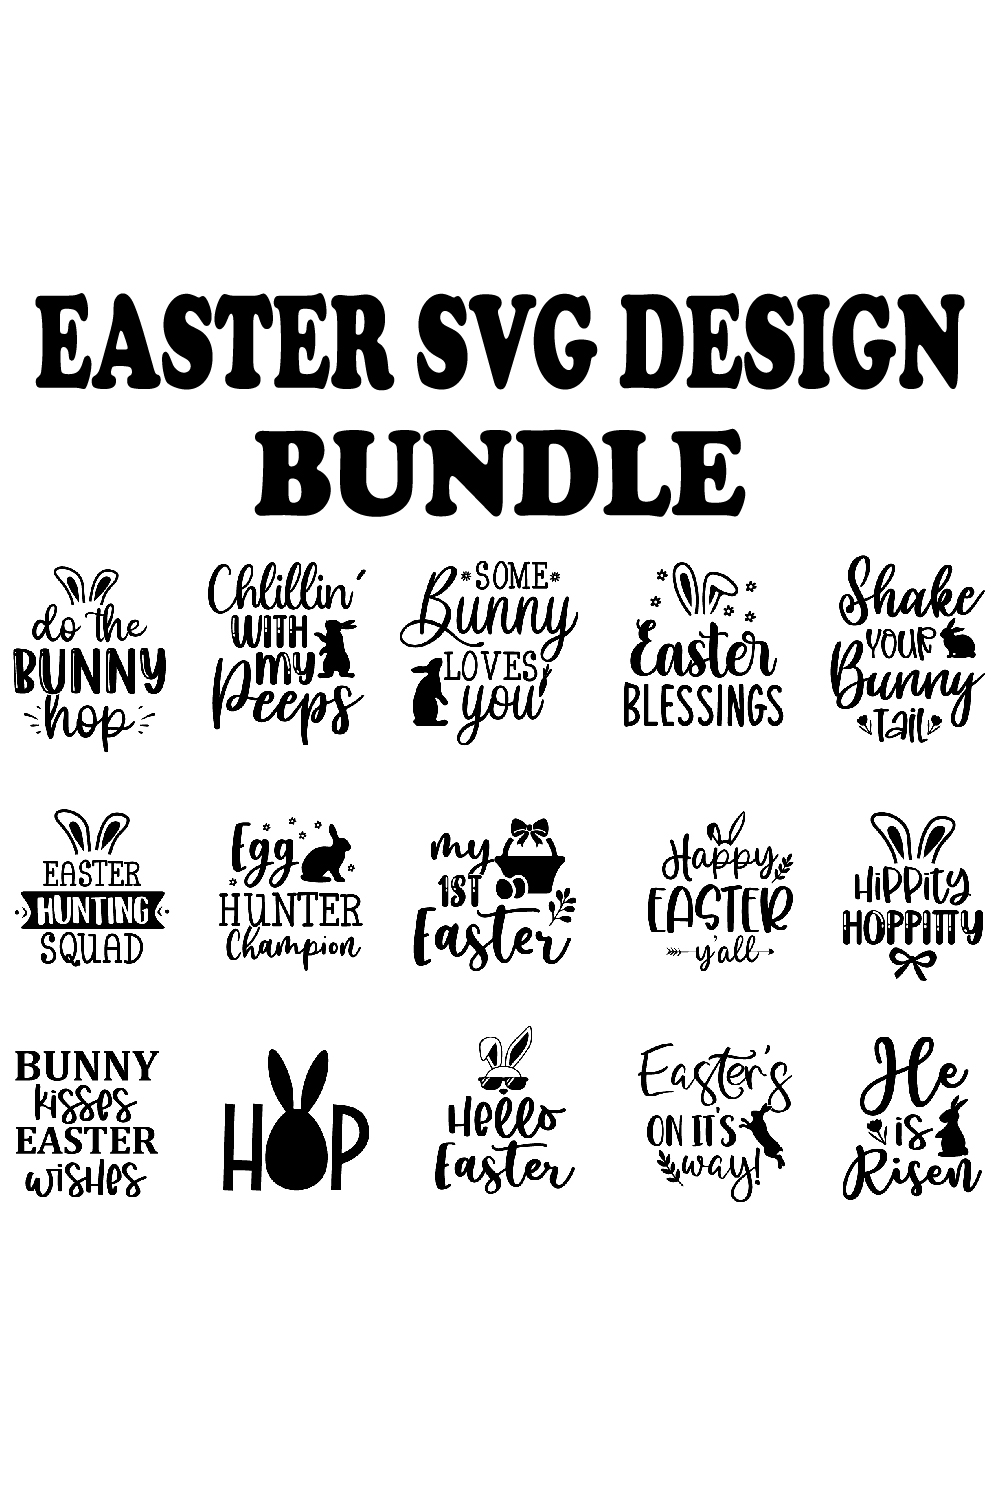 Easter SVG Design Bundle pinterest preview image.